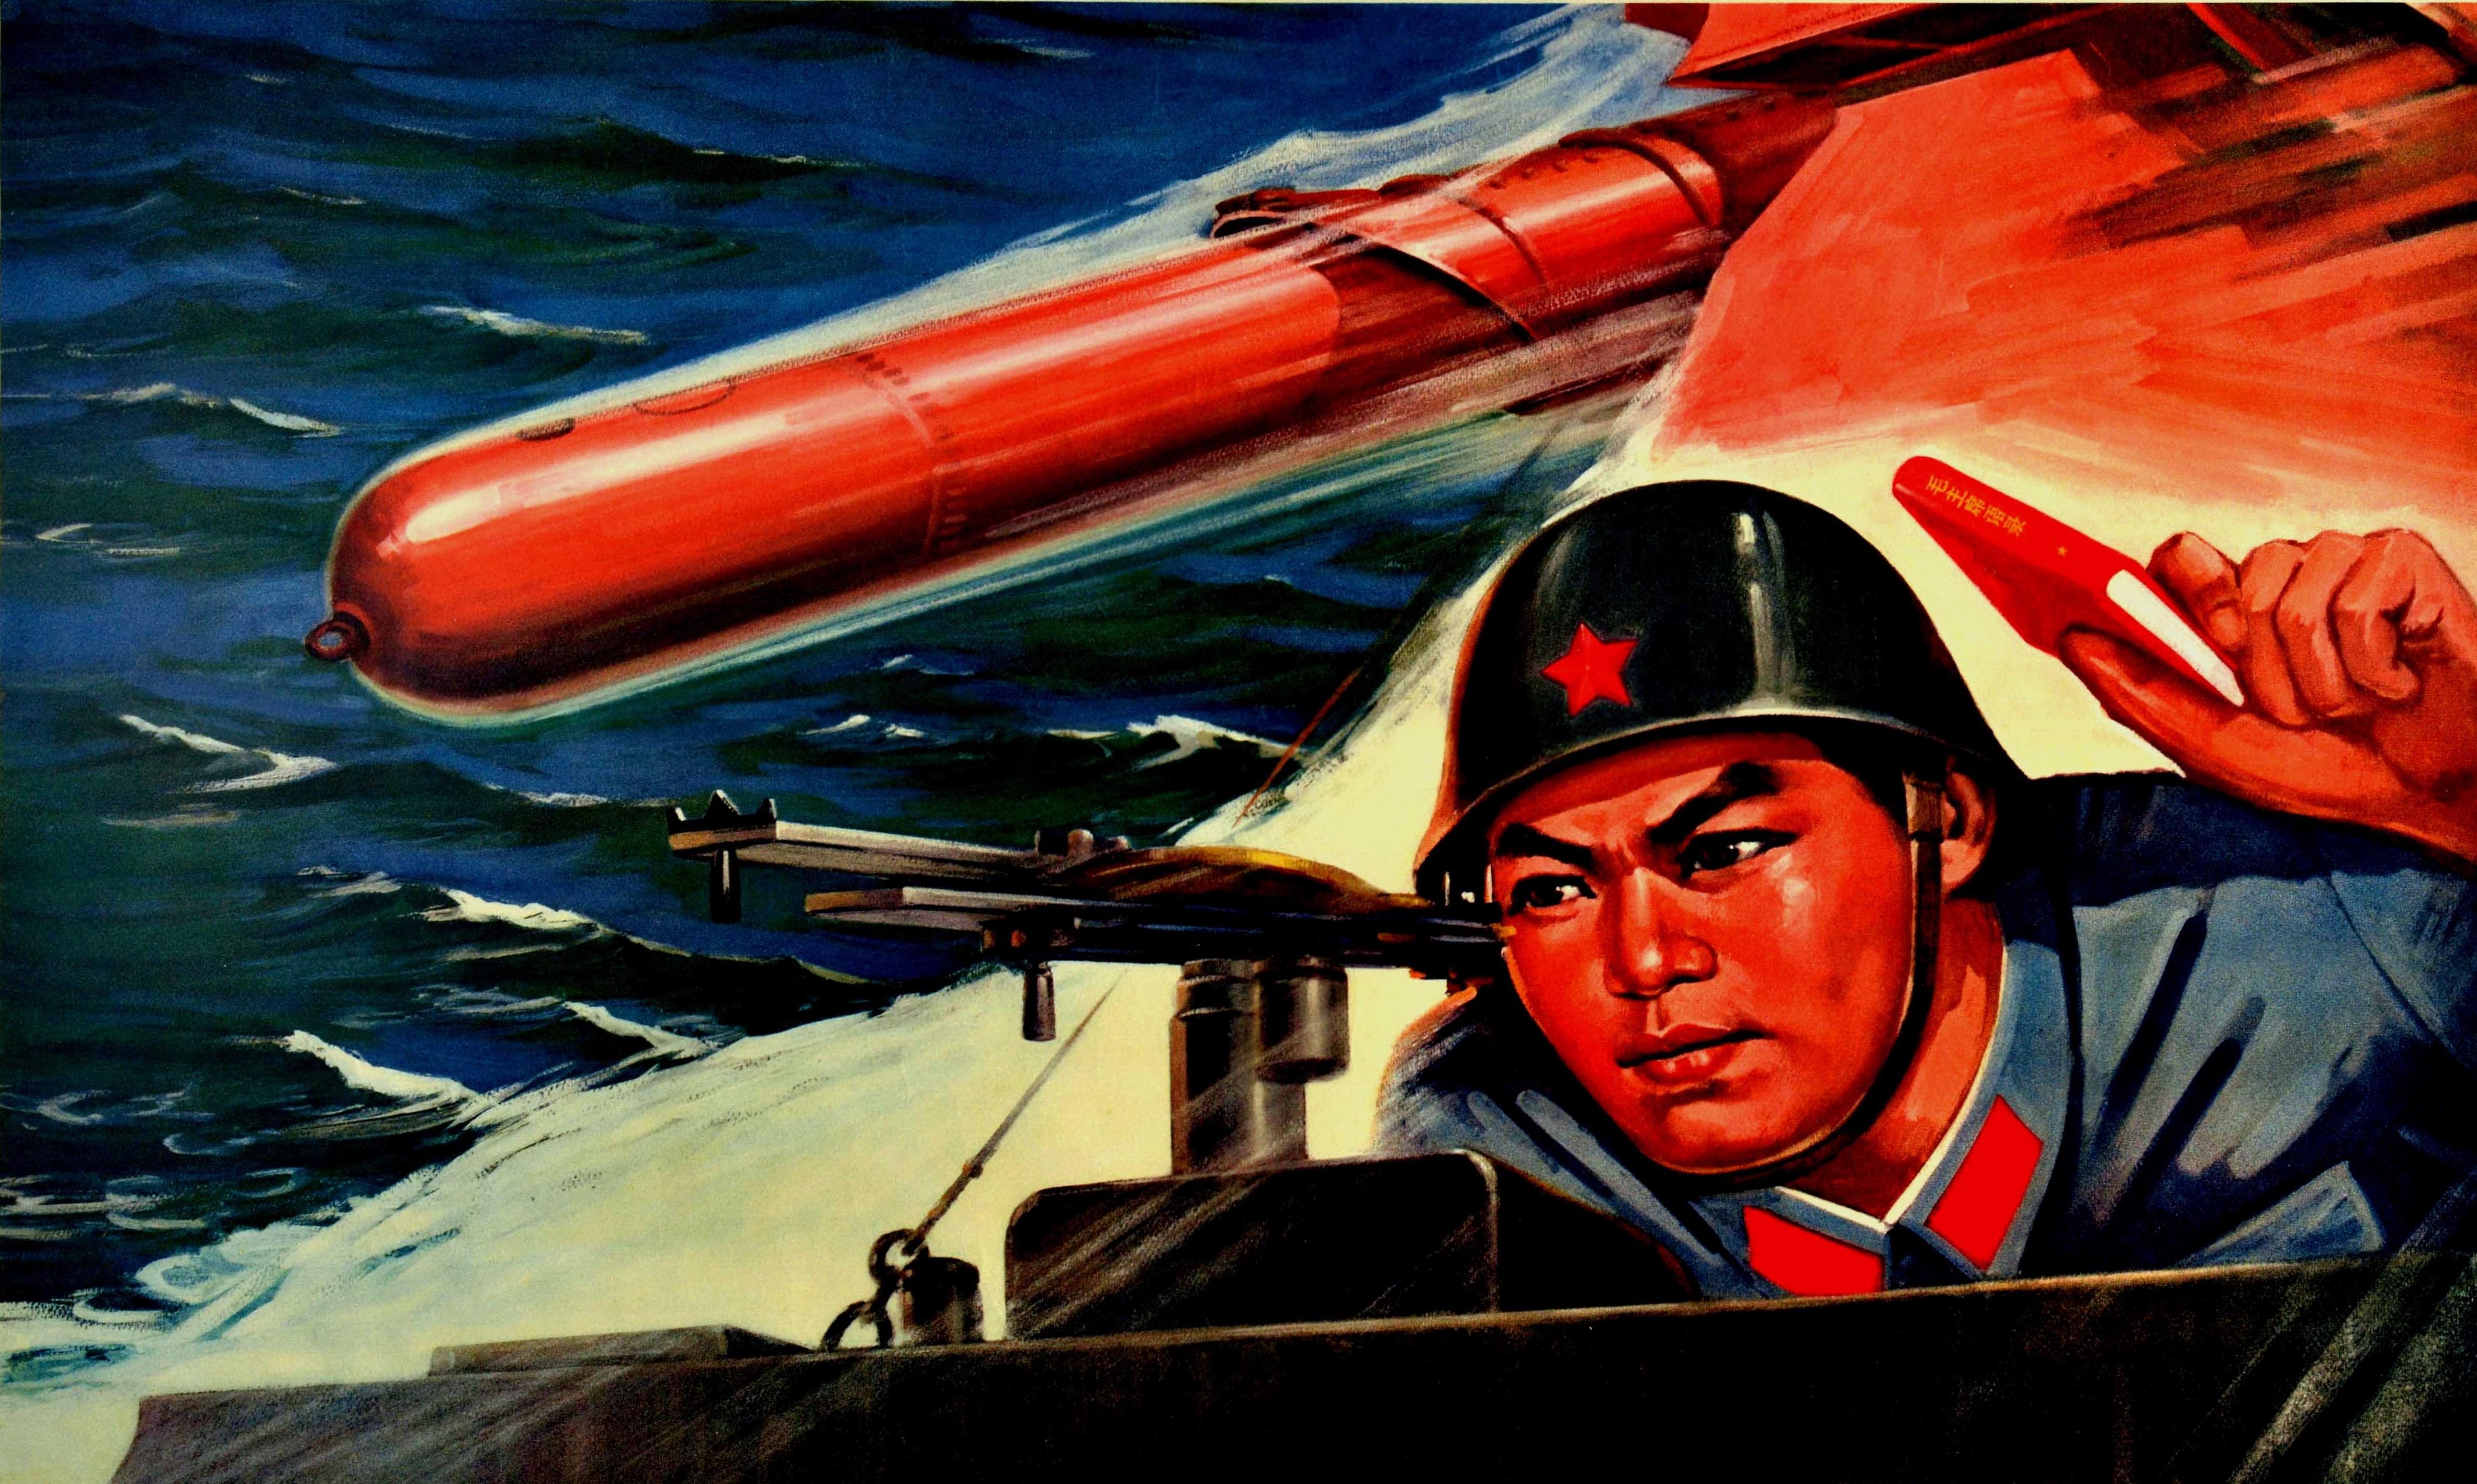 Originales altes chinesisches Propagandaplakat - Stand By To Annihilate Invading Enemies - mit einem dynamischen militärischen Design, das einen jungen Soldaten in Uniform und mit einem Helm mit rotem Stern darauf zeigt, der ein Exemplar des Kleinen